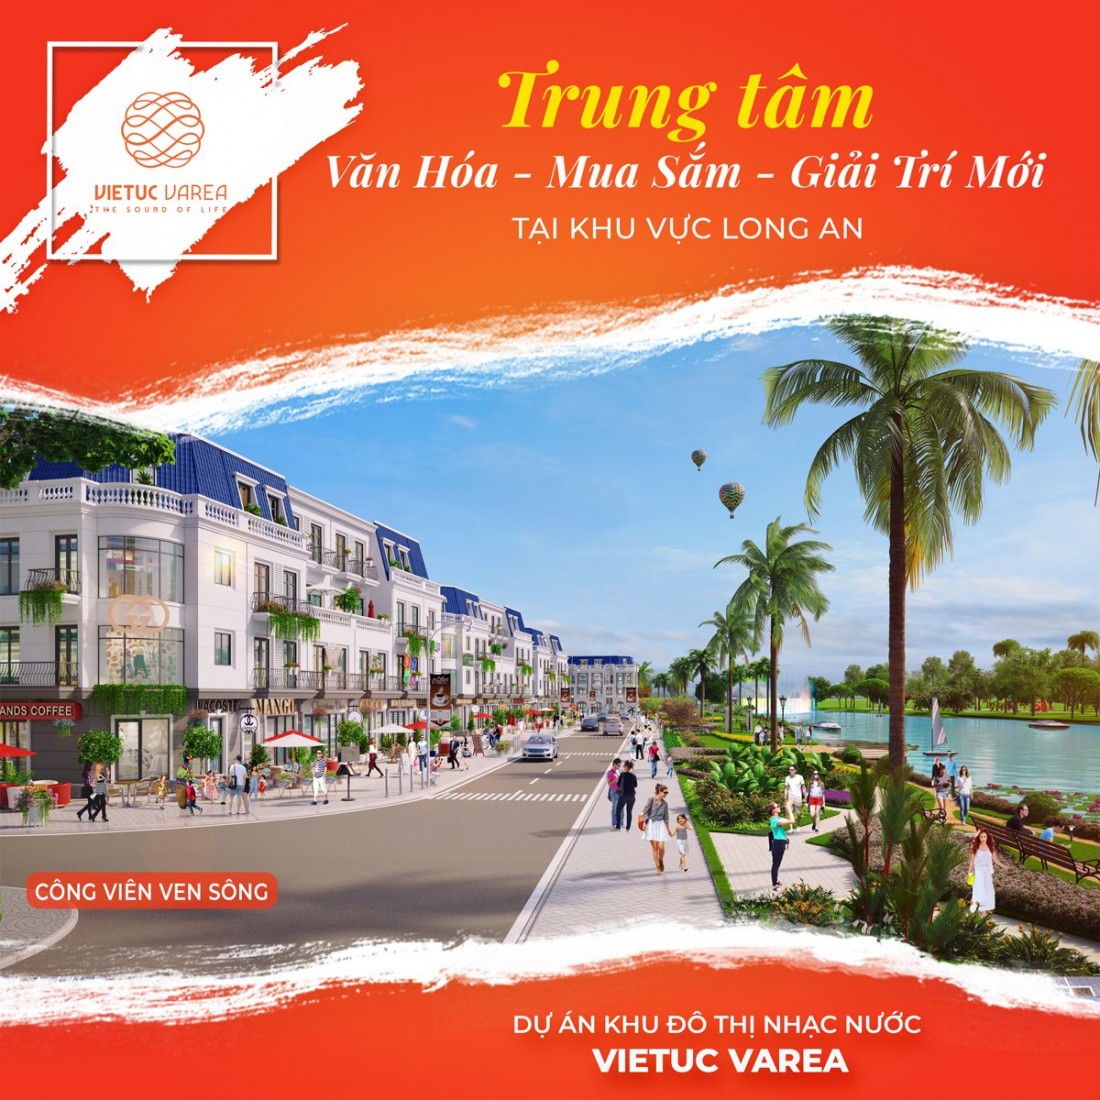 Việt úc Varea Bến Lức